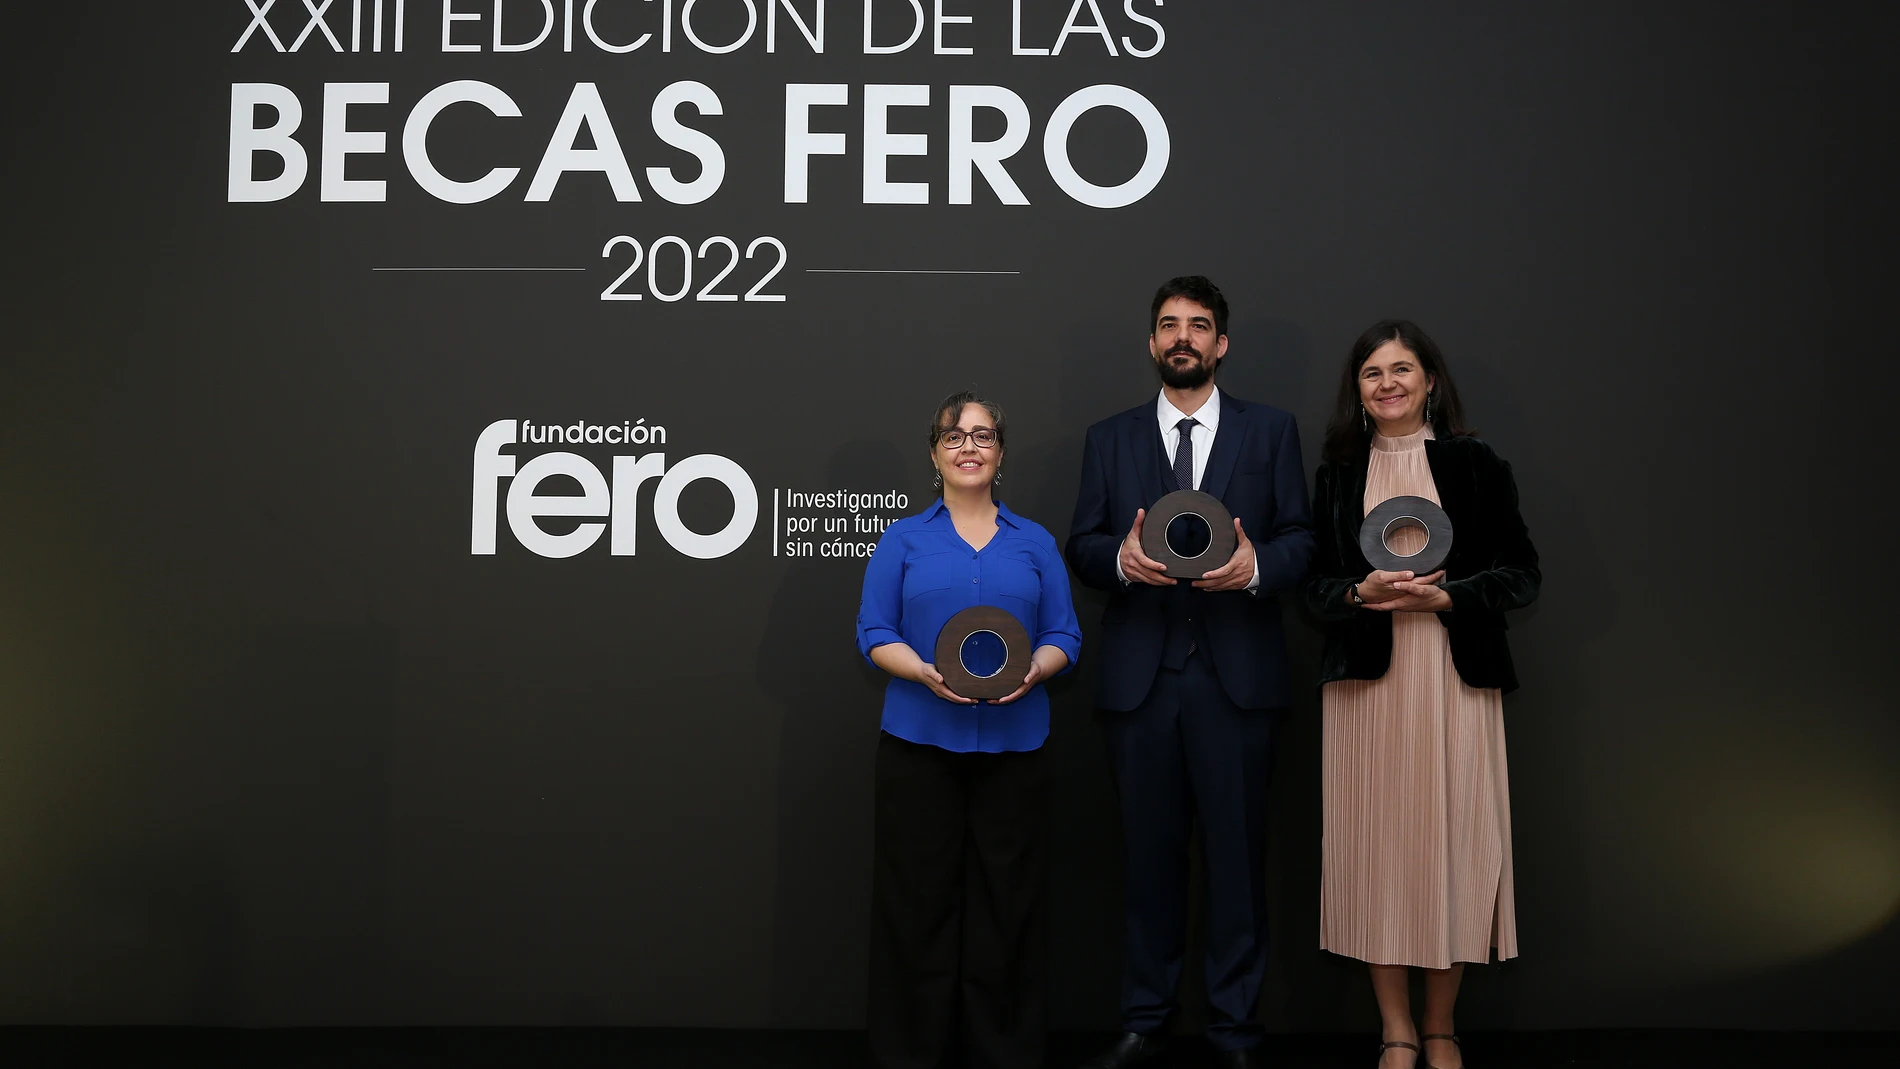 Los galardonados con las becas FERO 2022: Alicia González-Martín, Juan Miguel Cejalvo y Ainhoa San Martín